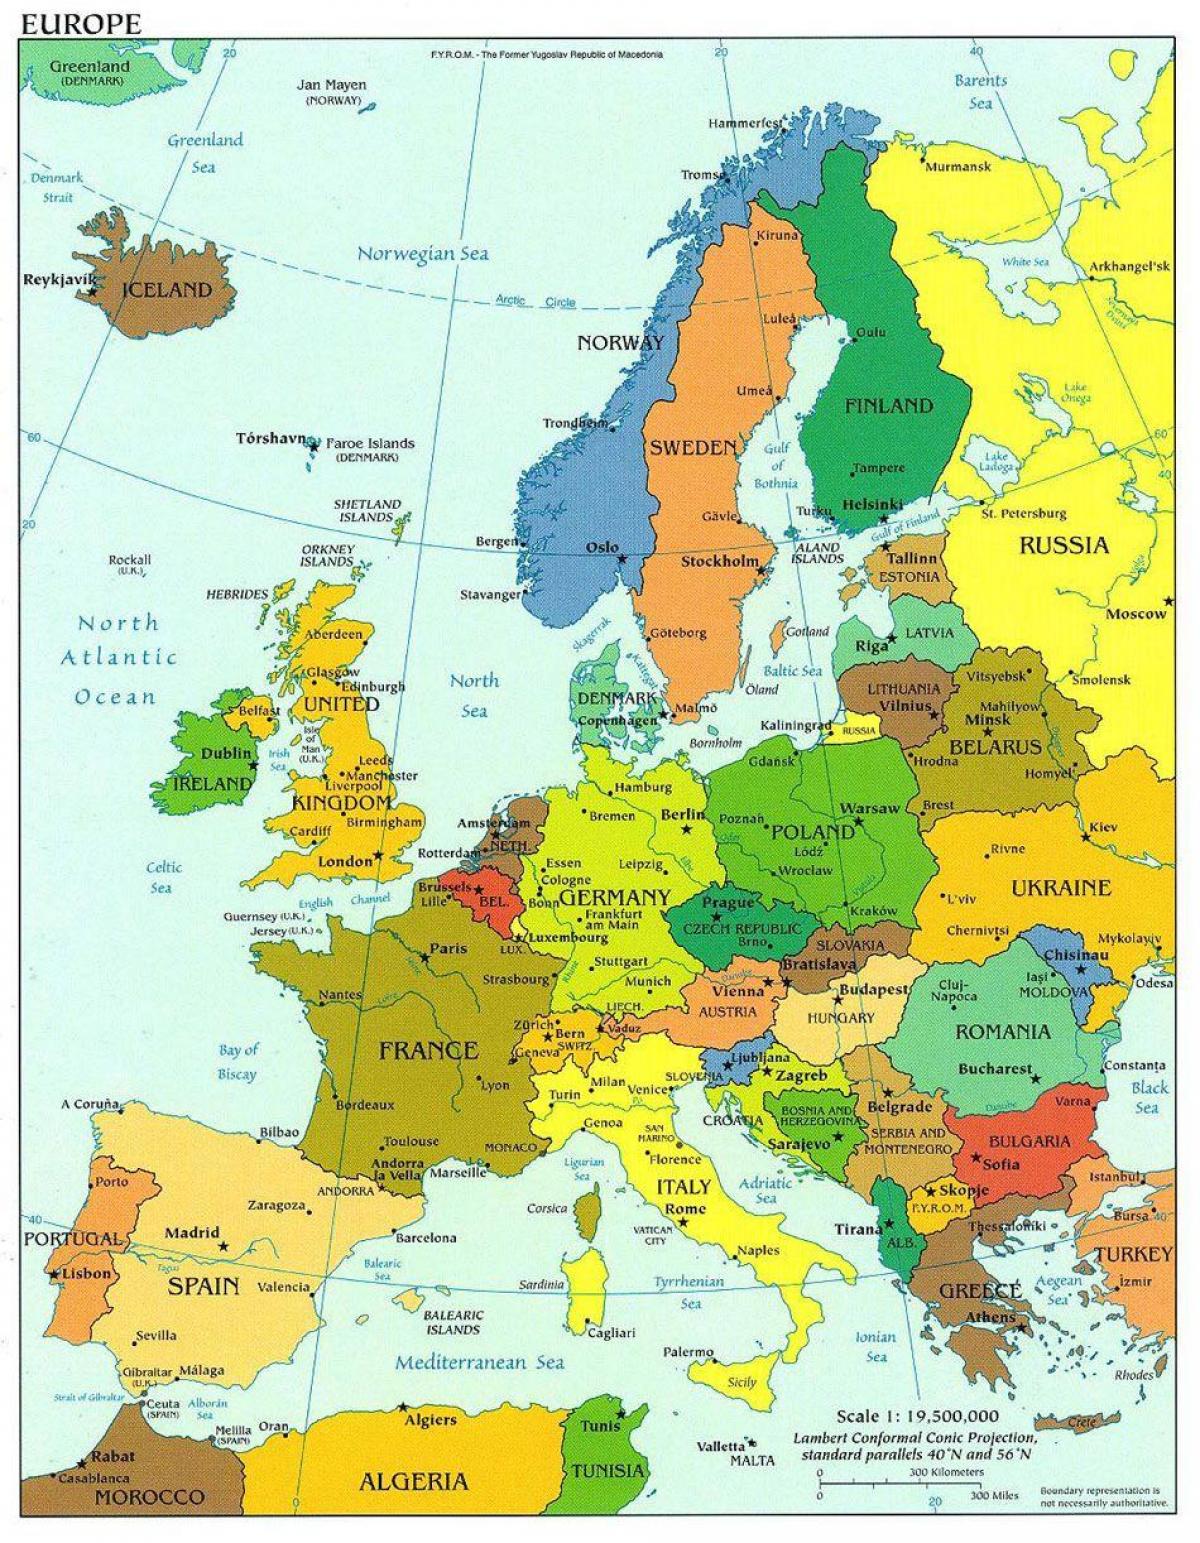 χάρτης της ευρώπης με τη δανία